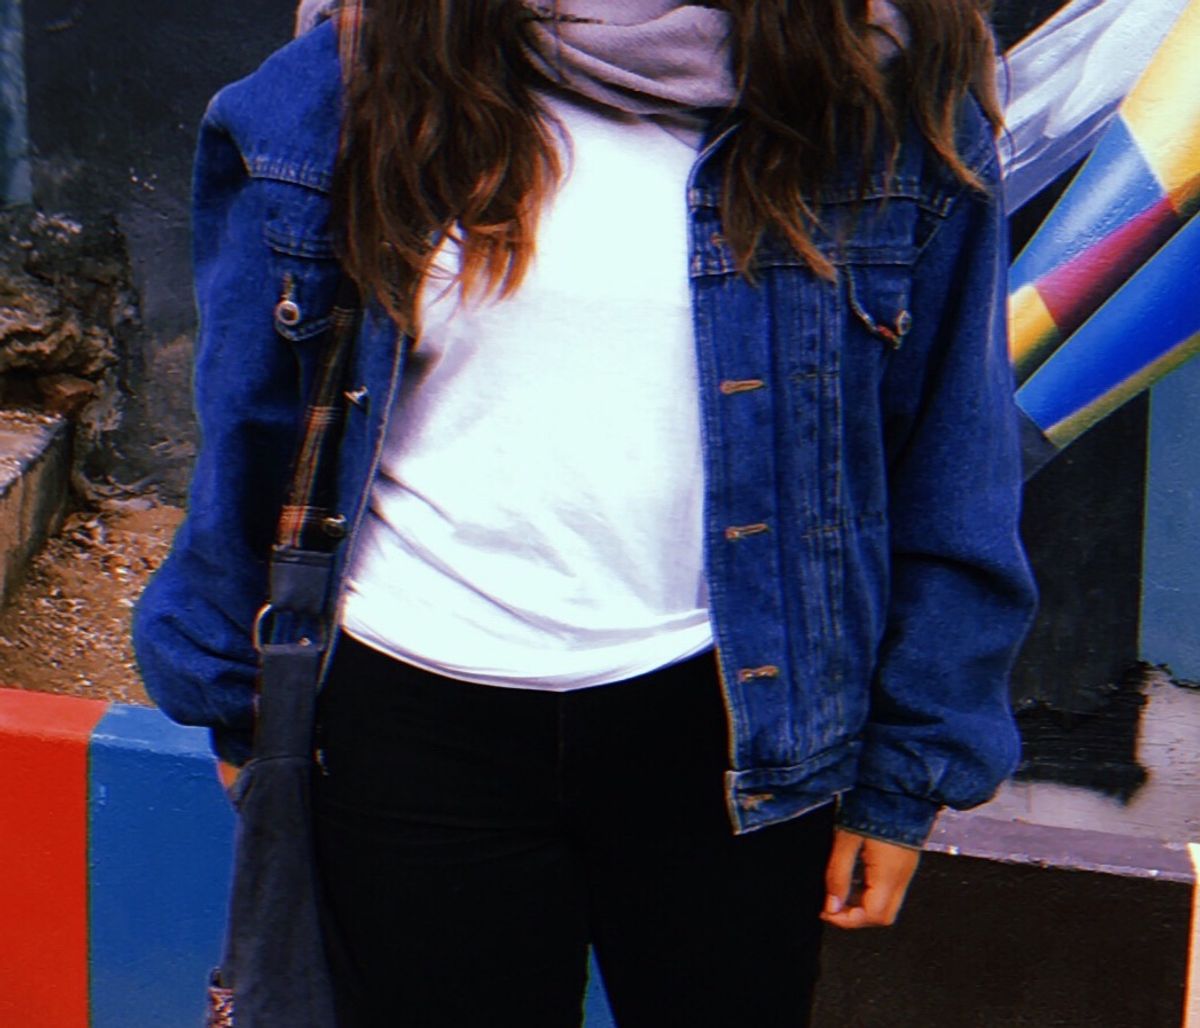 jaqueta jeans com forro de pelo feminina